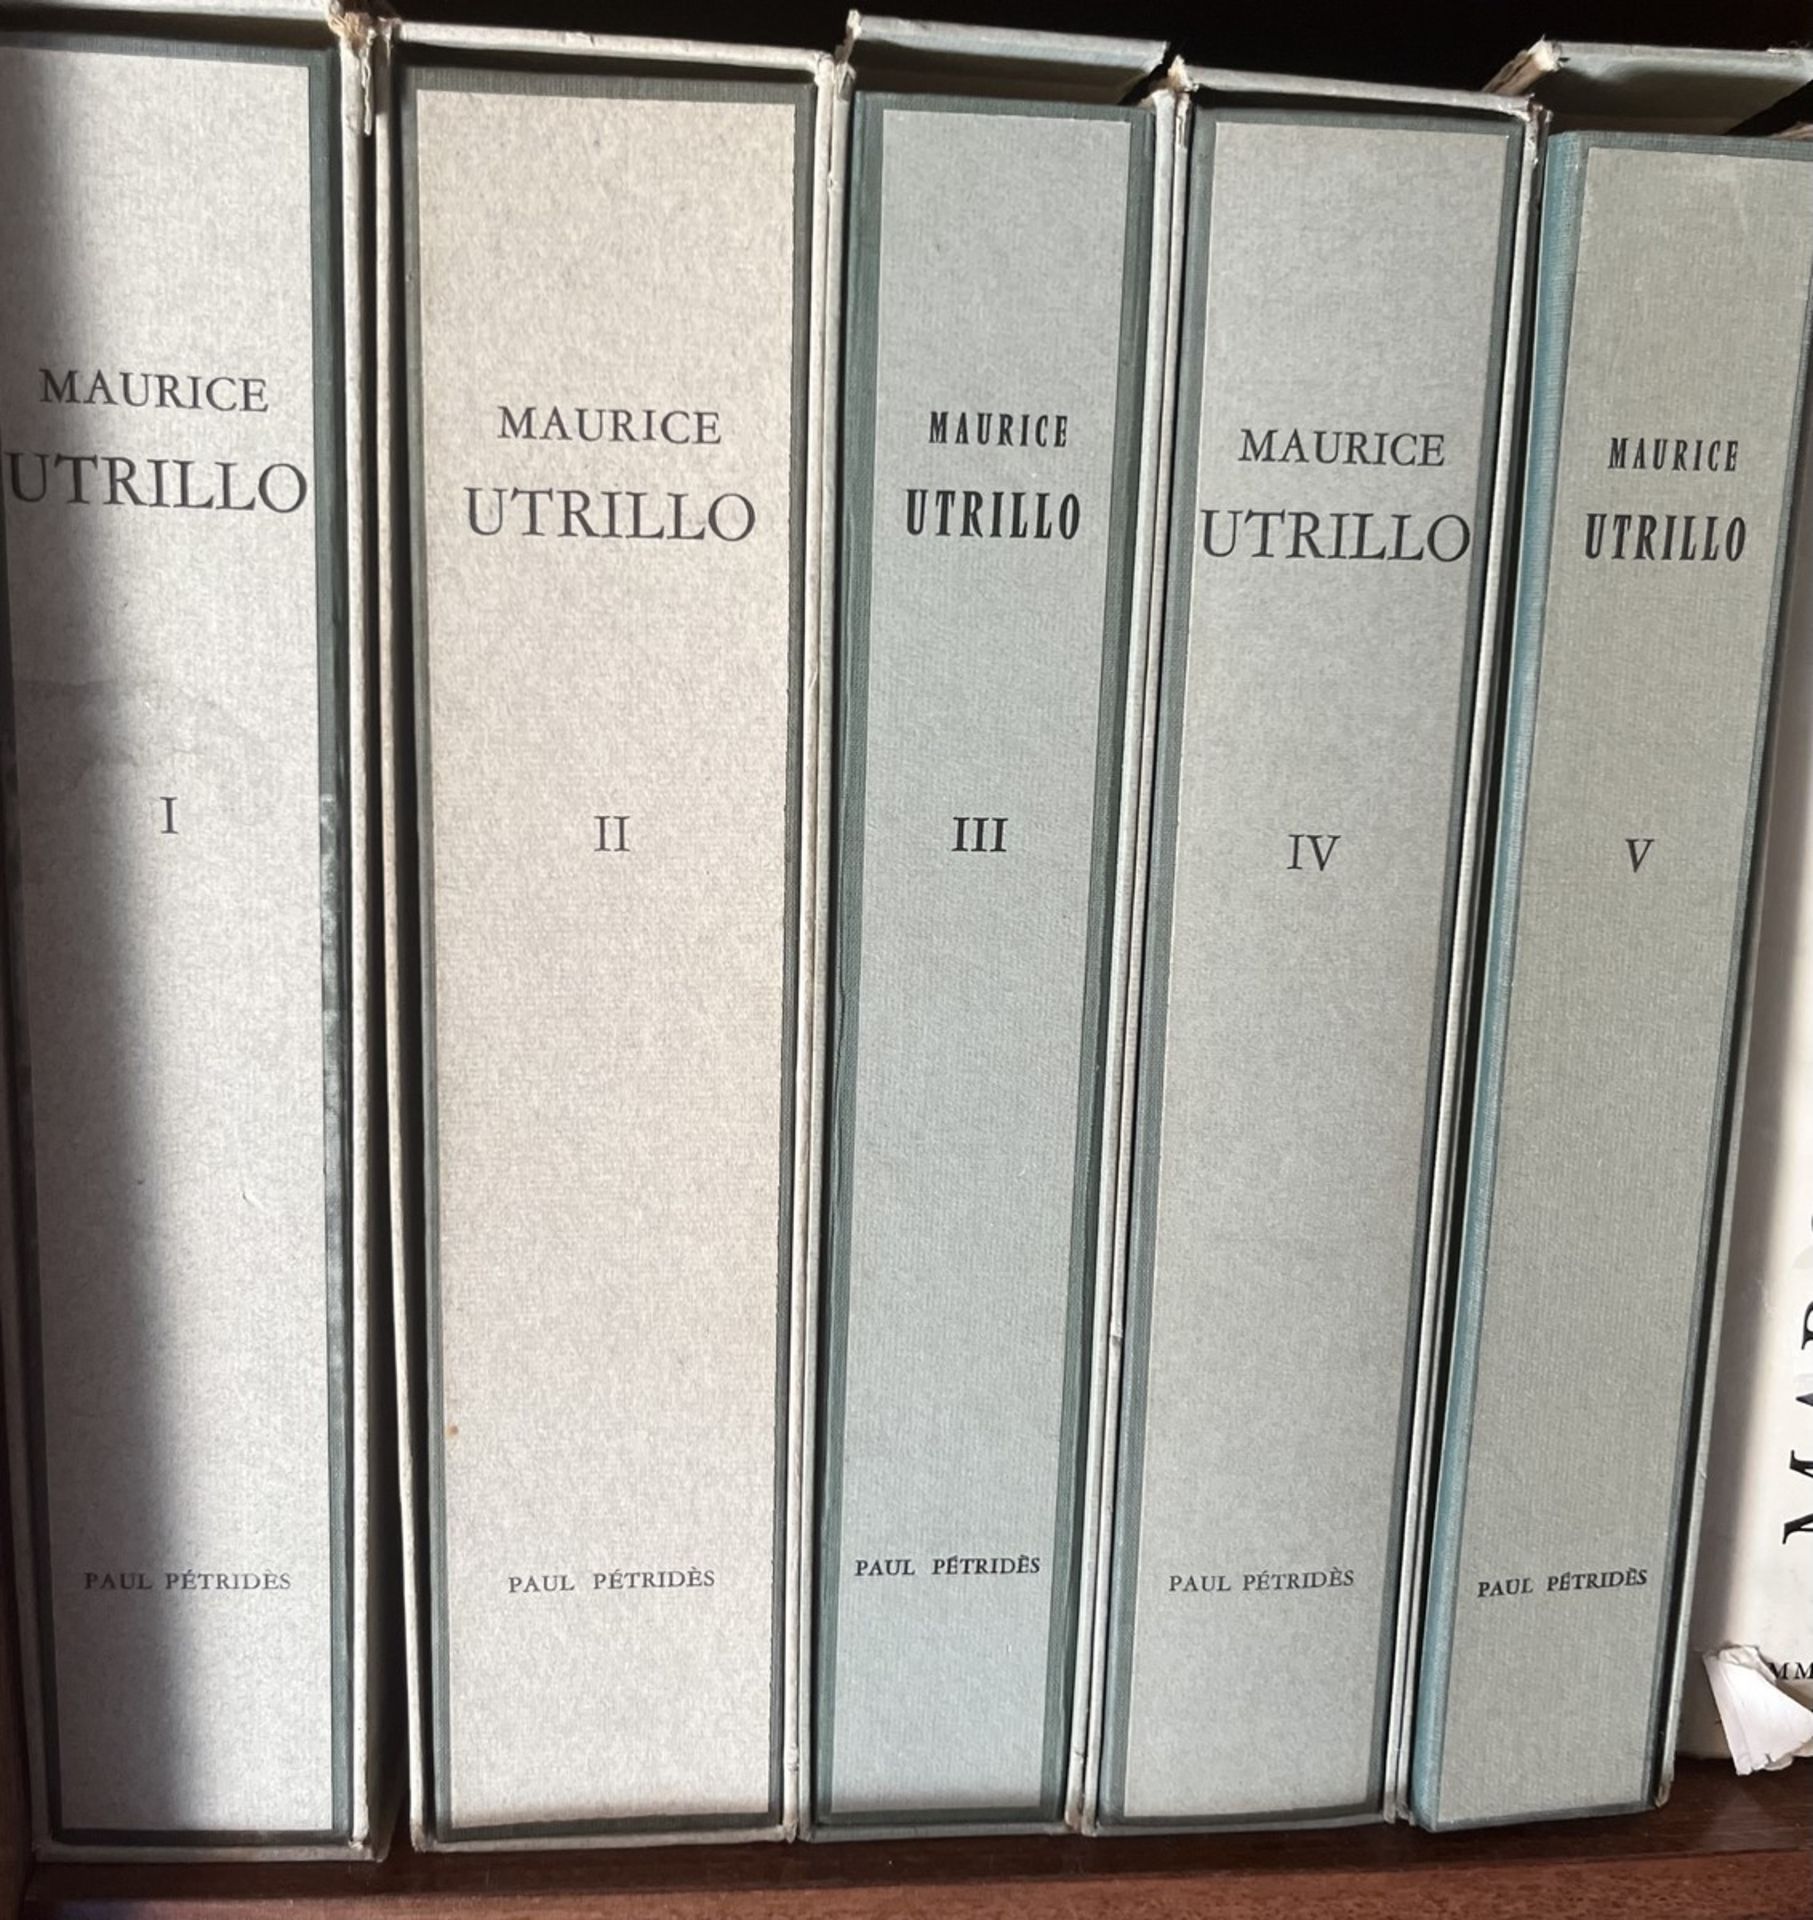 [MAURICE UTRILLO]. L'Œuvre Complet de Maurice Utrillo Volume I à V. Paul Pétridès Editeur, Paris 196 - Bild 3 aus 3